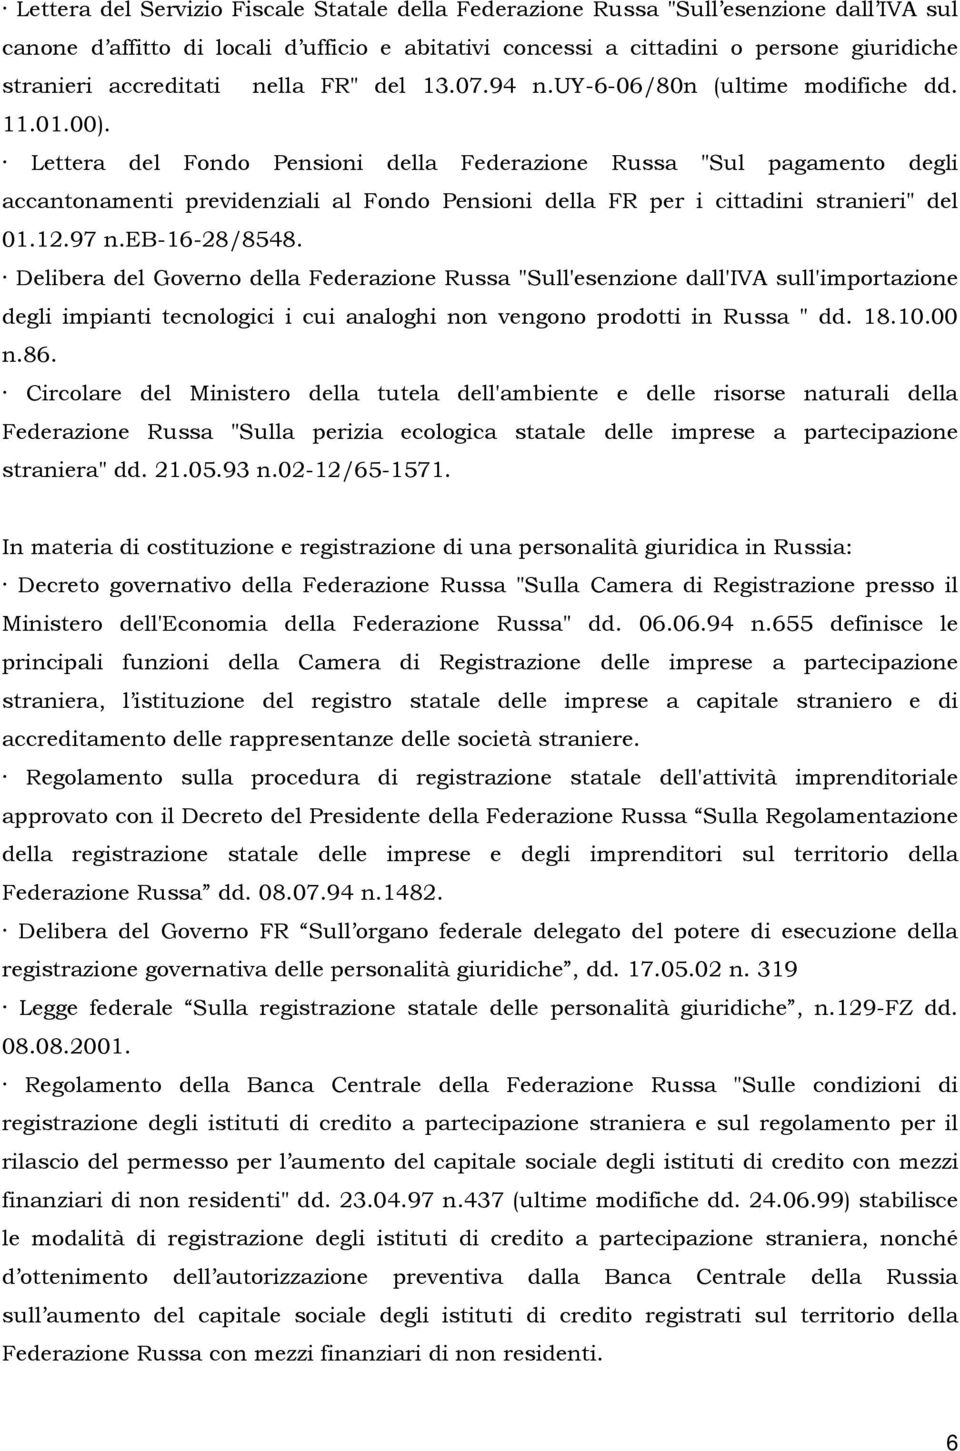 Lettera del Fondo Pensioni della Federazione Russa "Sul pagamento degli accantonamenti previdenziali al Fondo Pensioni della FR per i cittadini stranieri" del 01.12.97 n.eb-16-28/8548.